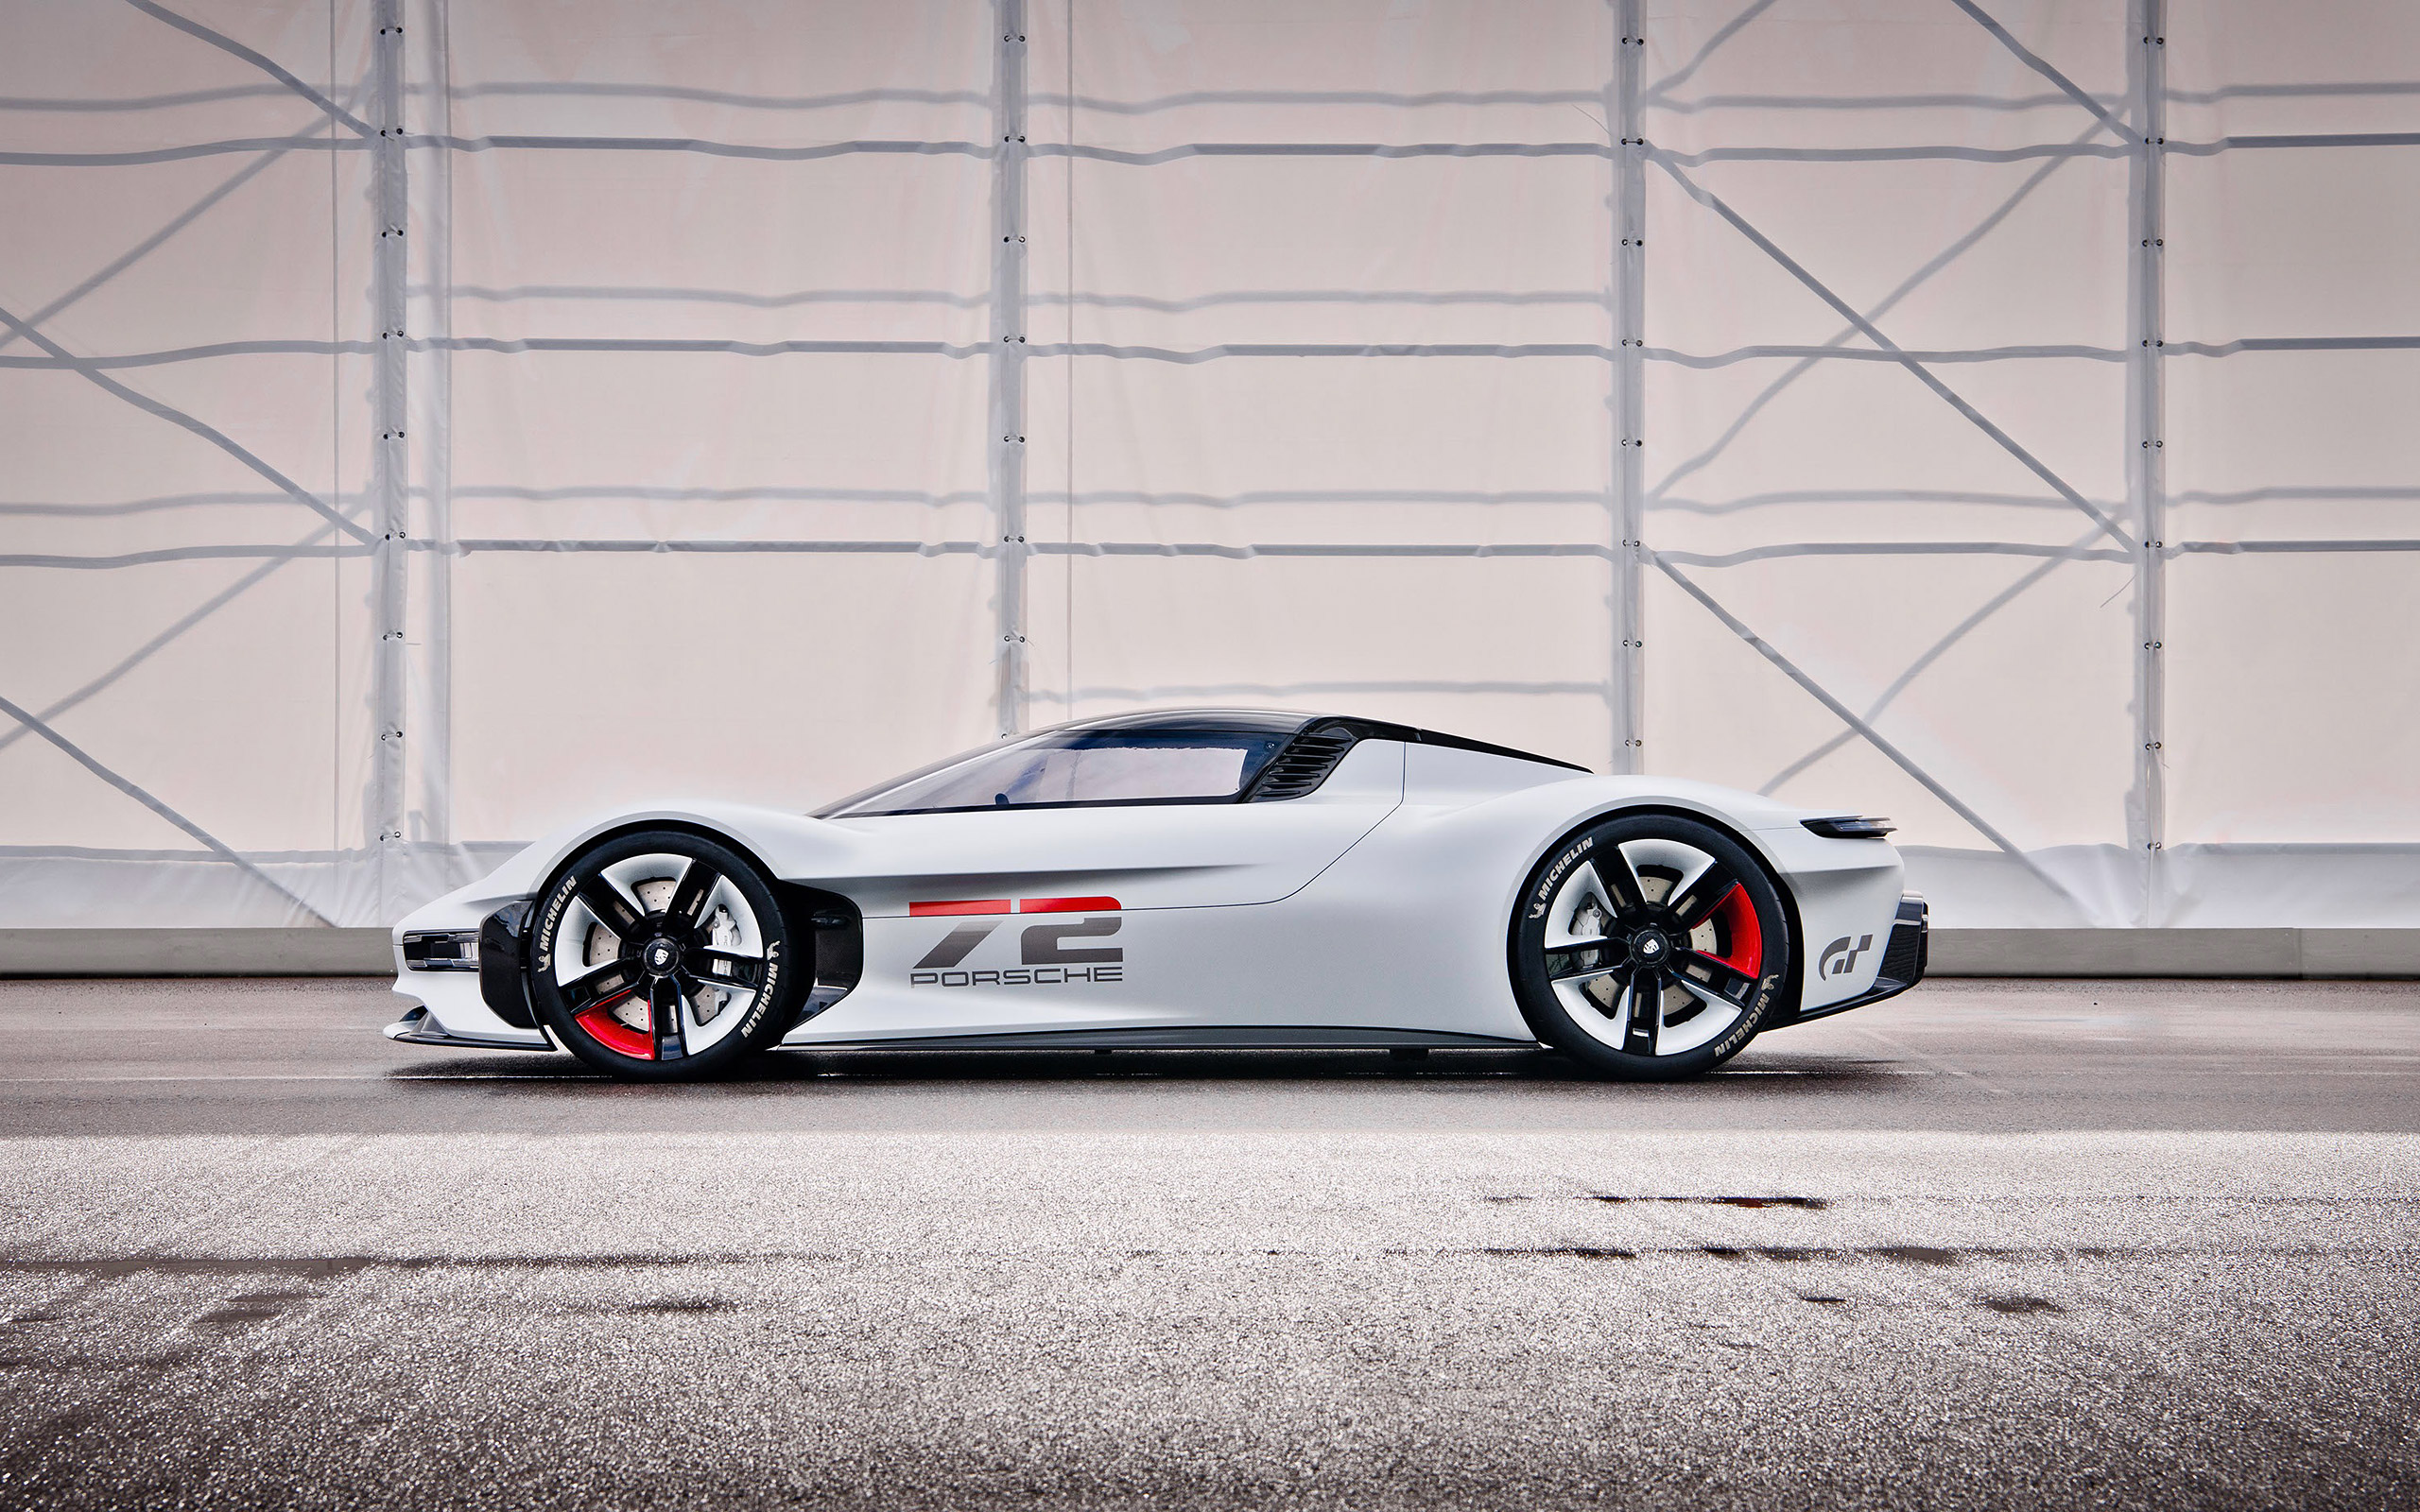  2021 Porsche Vision Gran Turismo Concept Wallpaper.